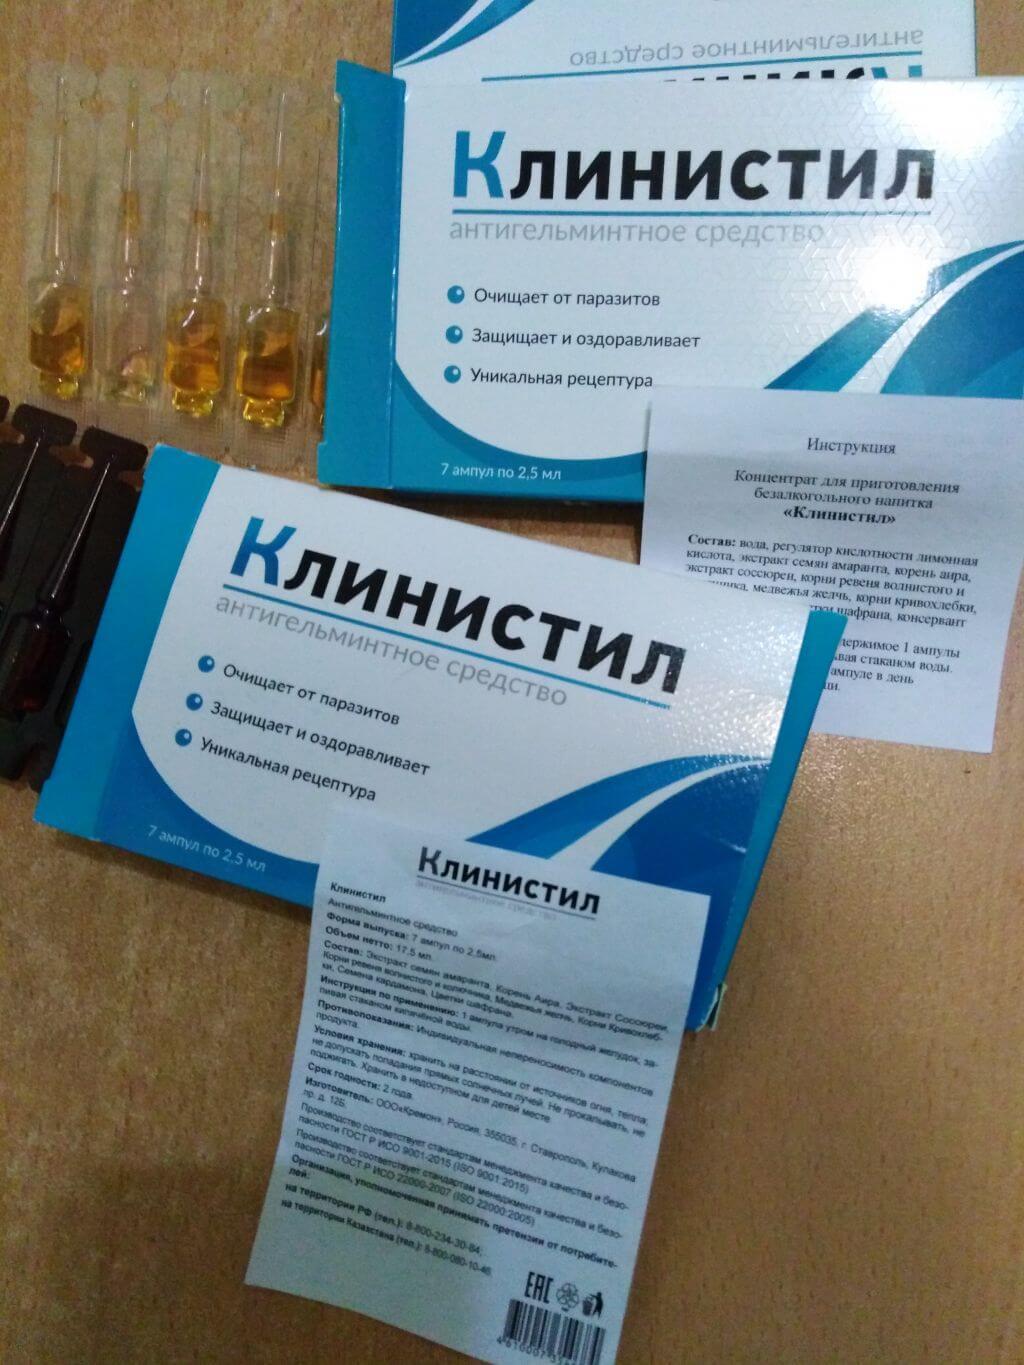 Цена на клинистил в Кирове